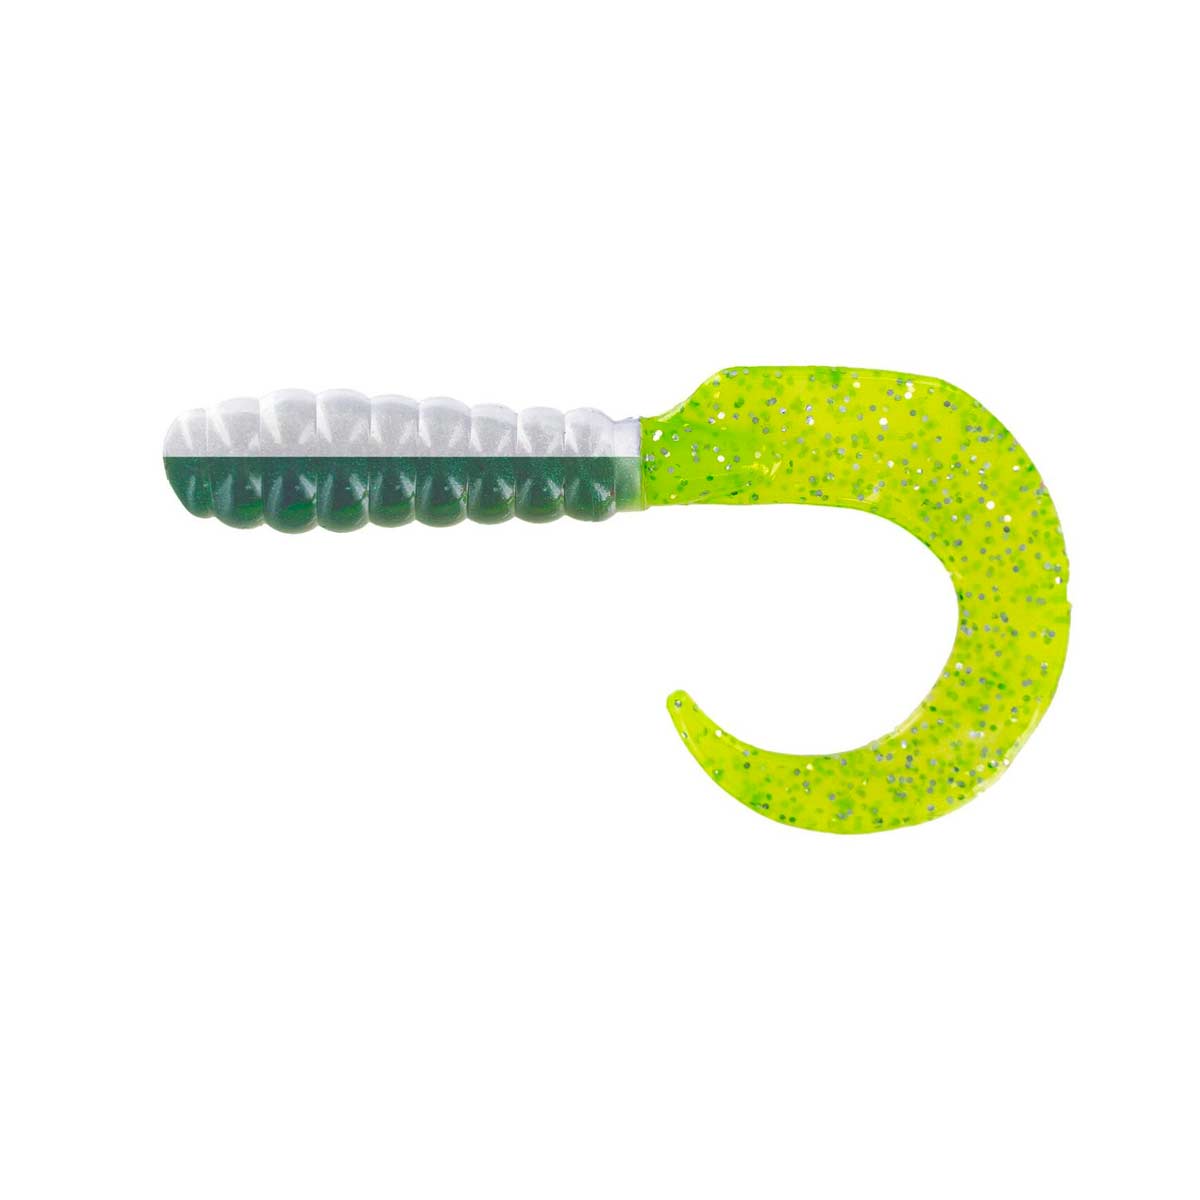 Curl Tail Grub_Ten Shad/Chartreuse Glitter